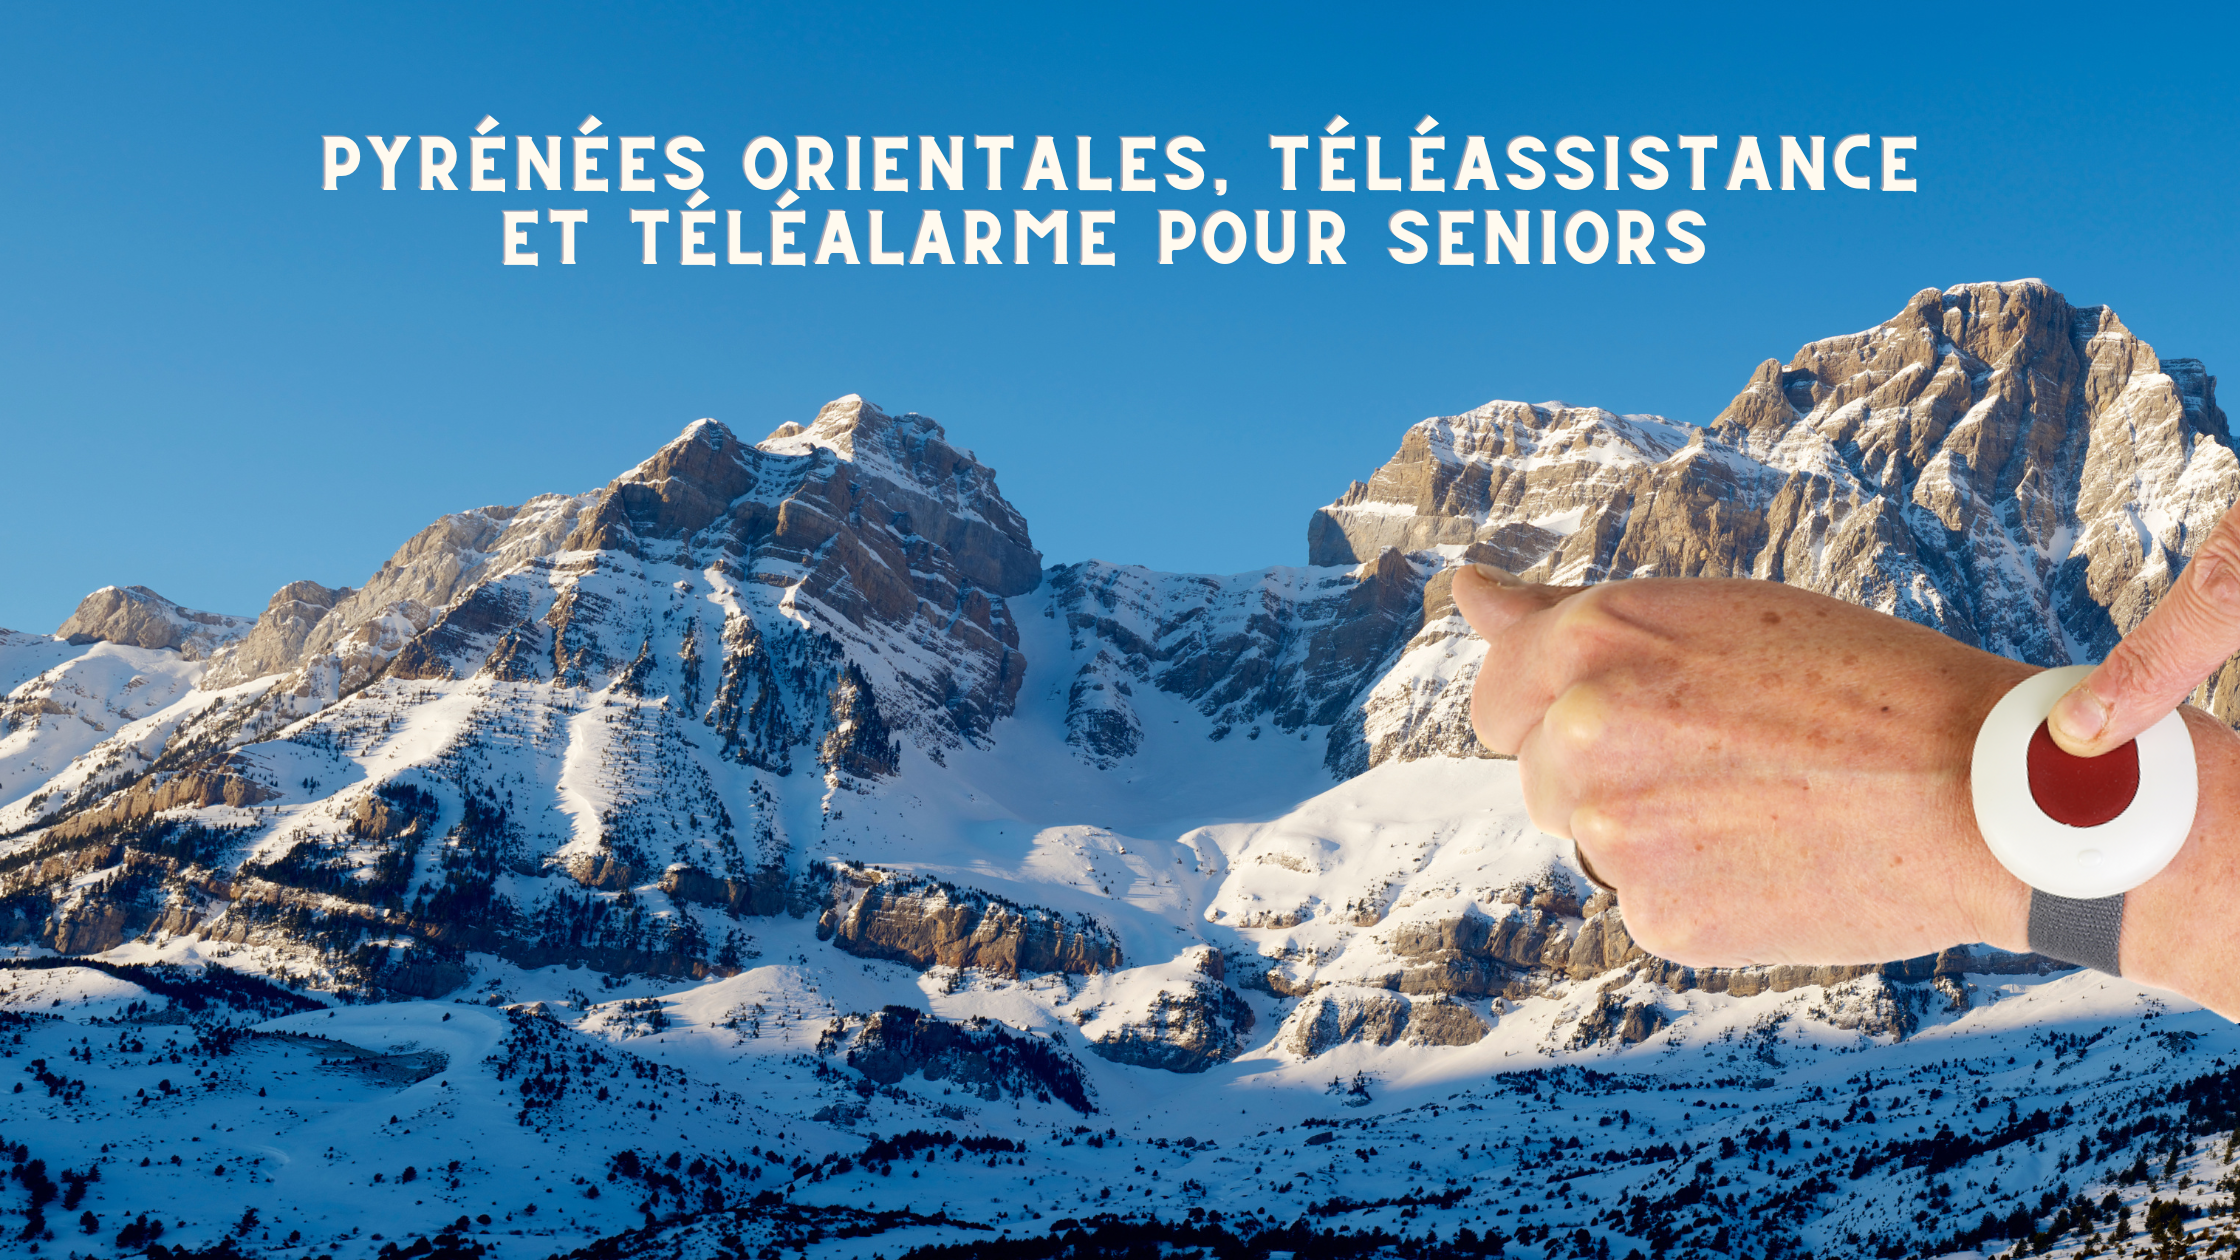 Pyrénées Orientales, Téléassistance et téléalarme pour seniors